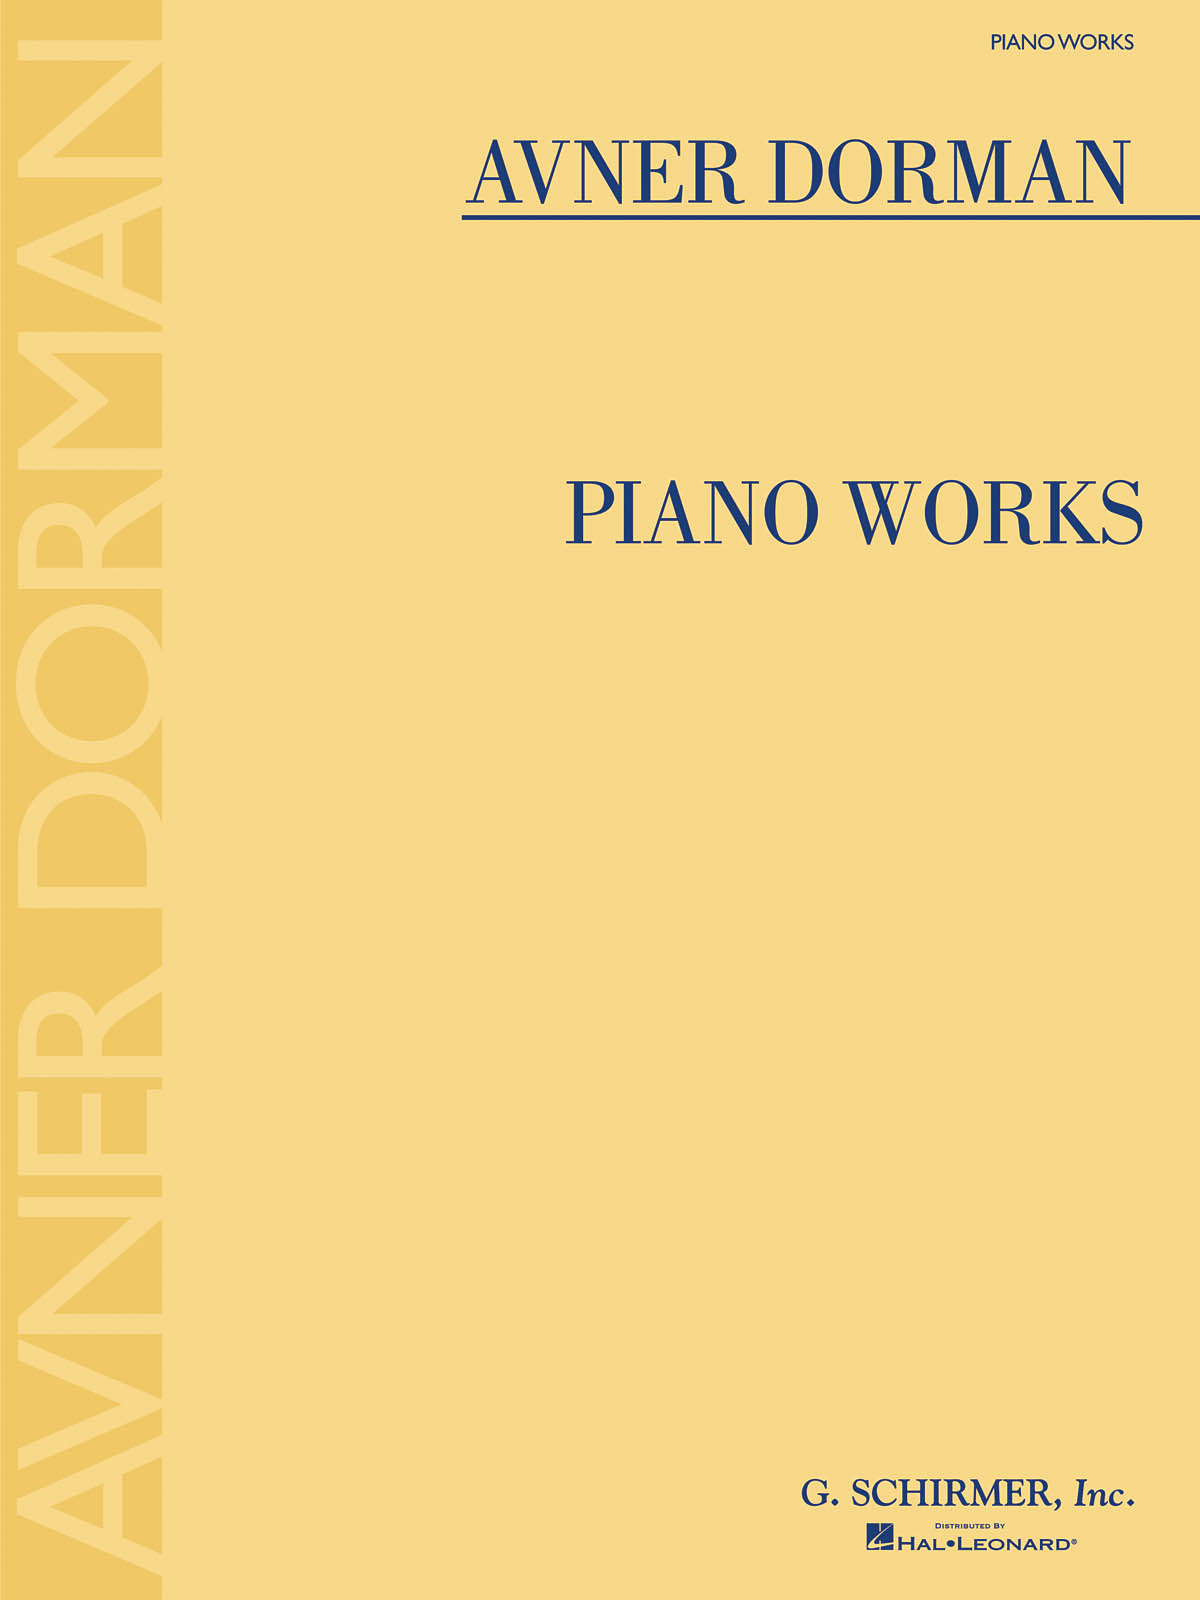 Avner Dorman: Piano Works